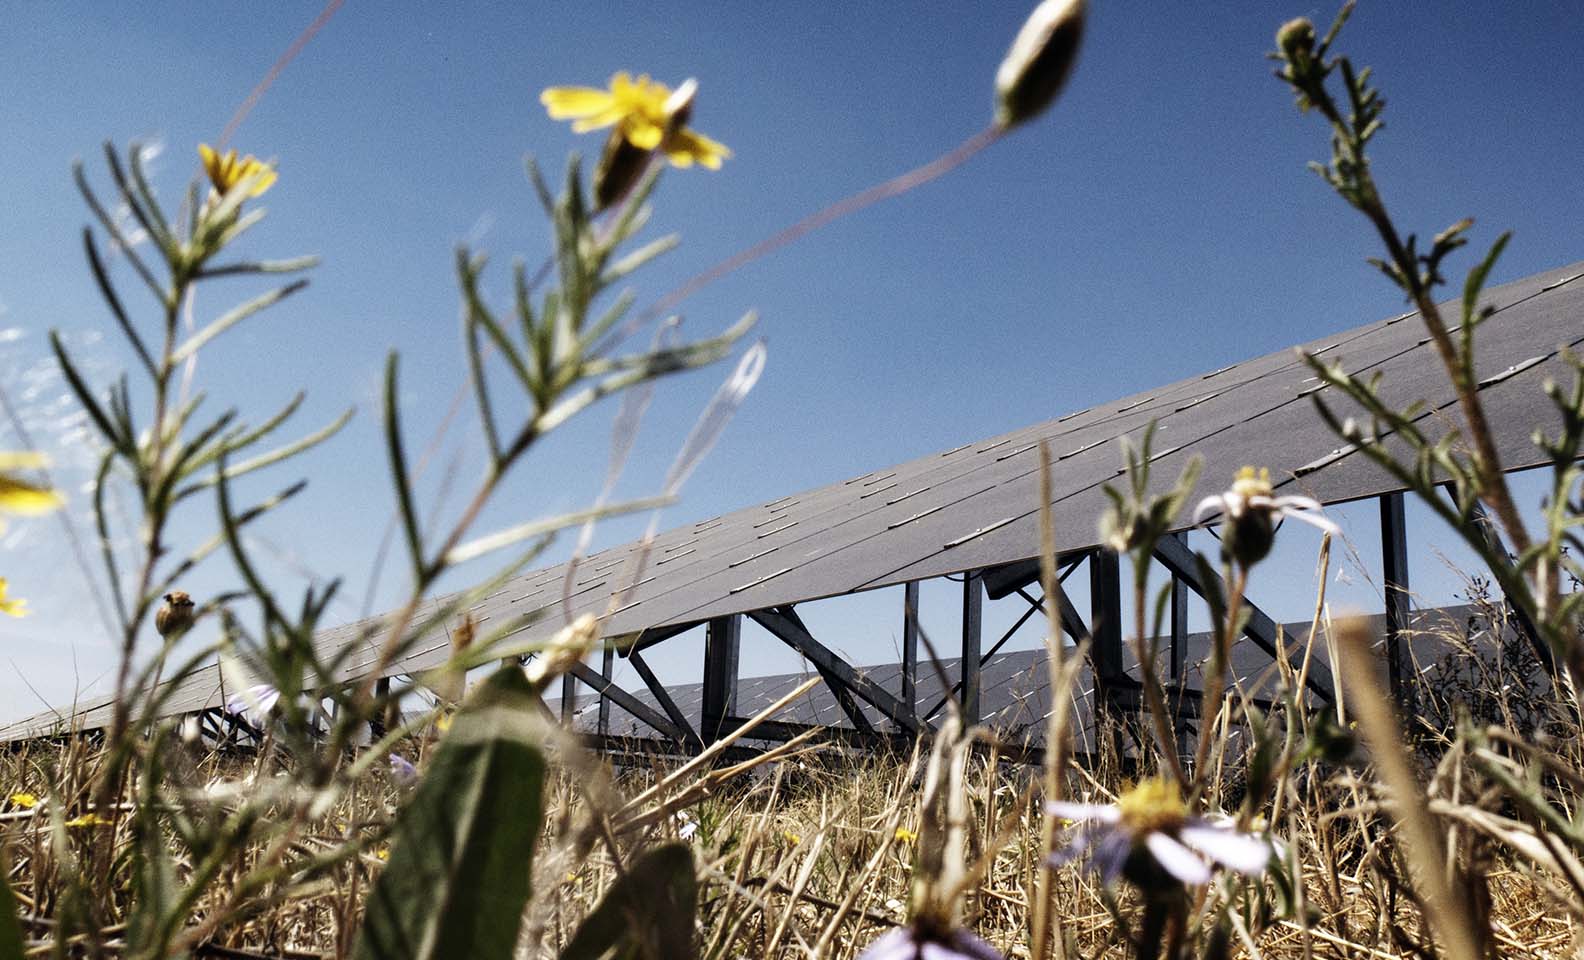 Vista de los paneles fotovoltaicos entre las flores